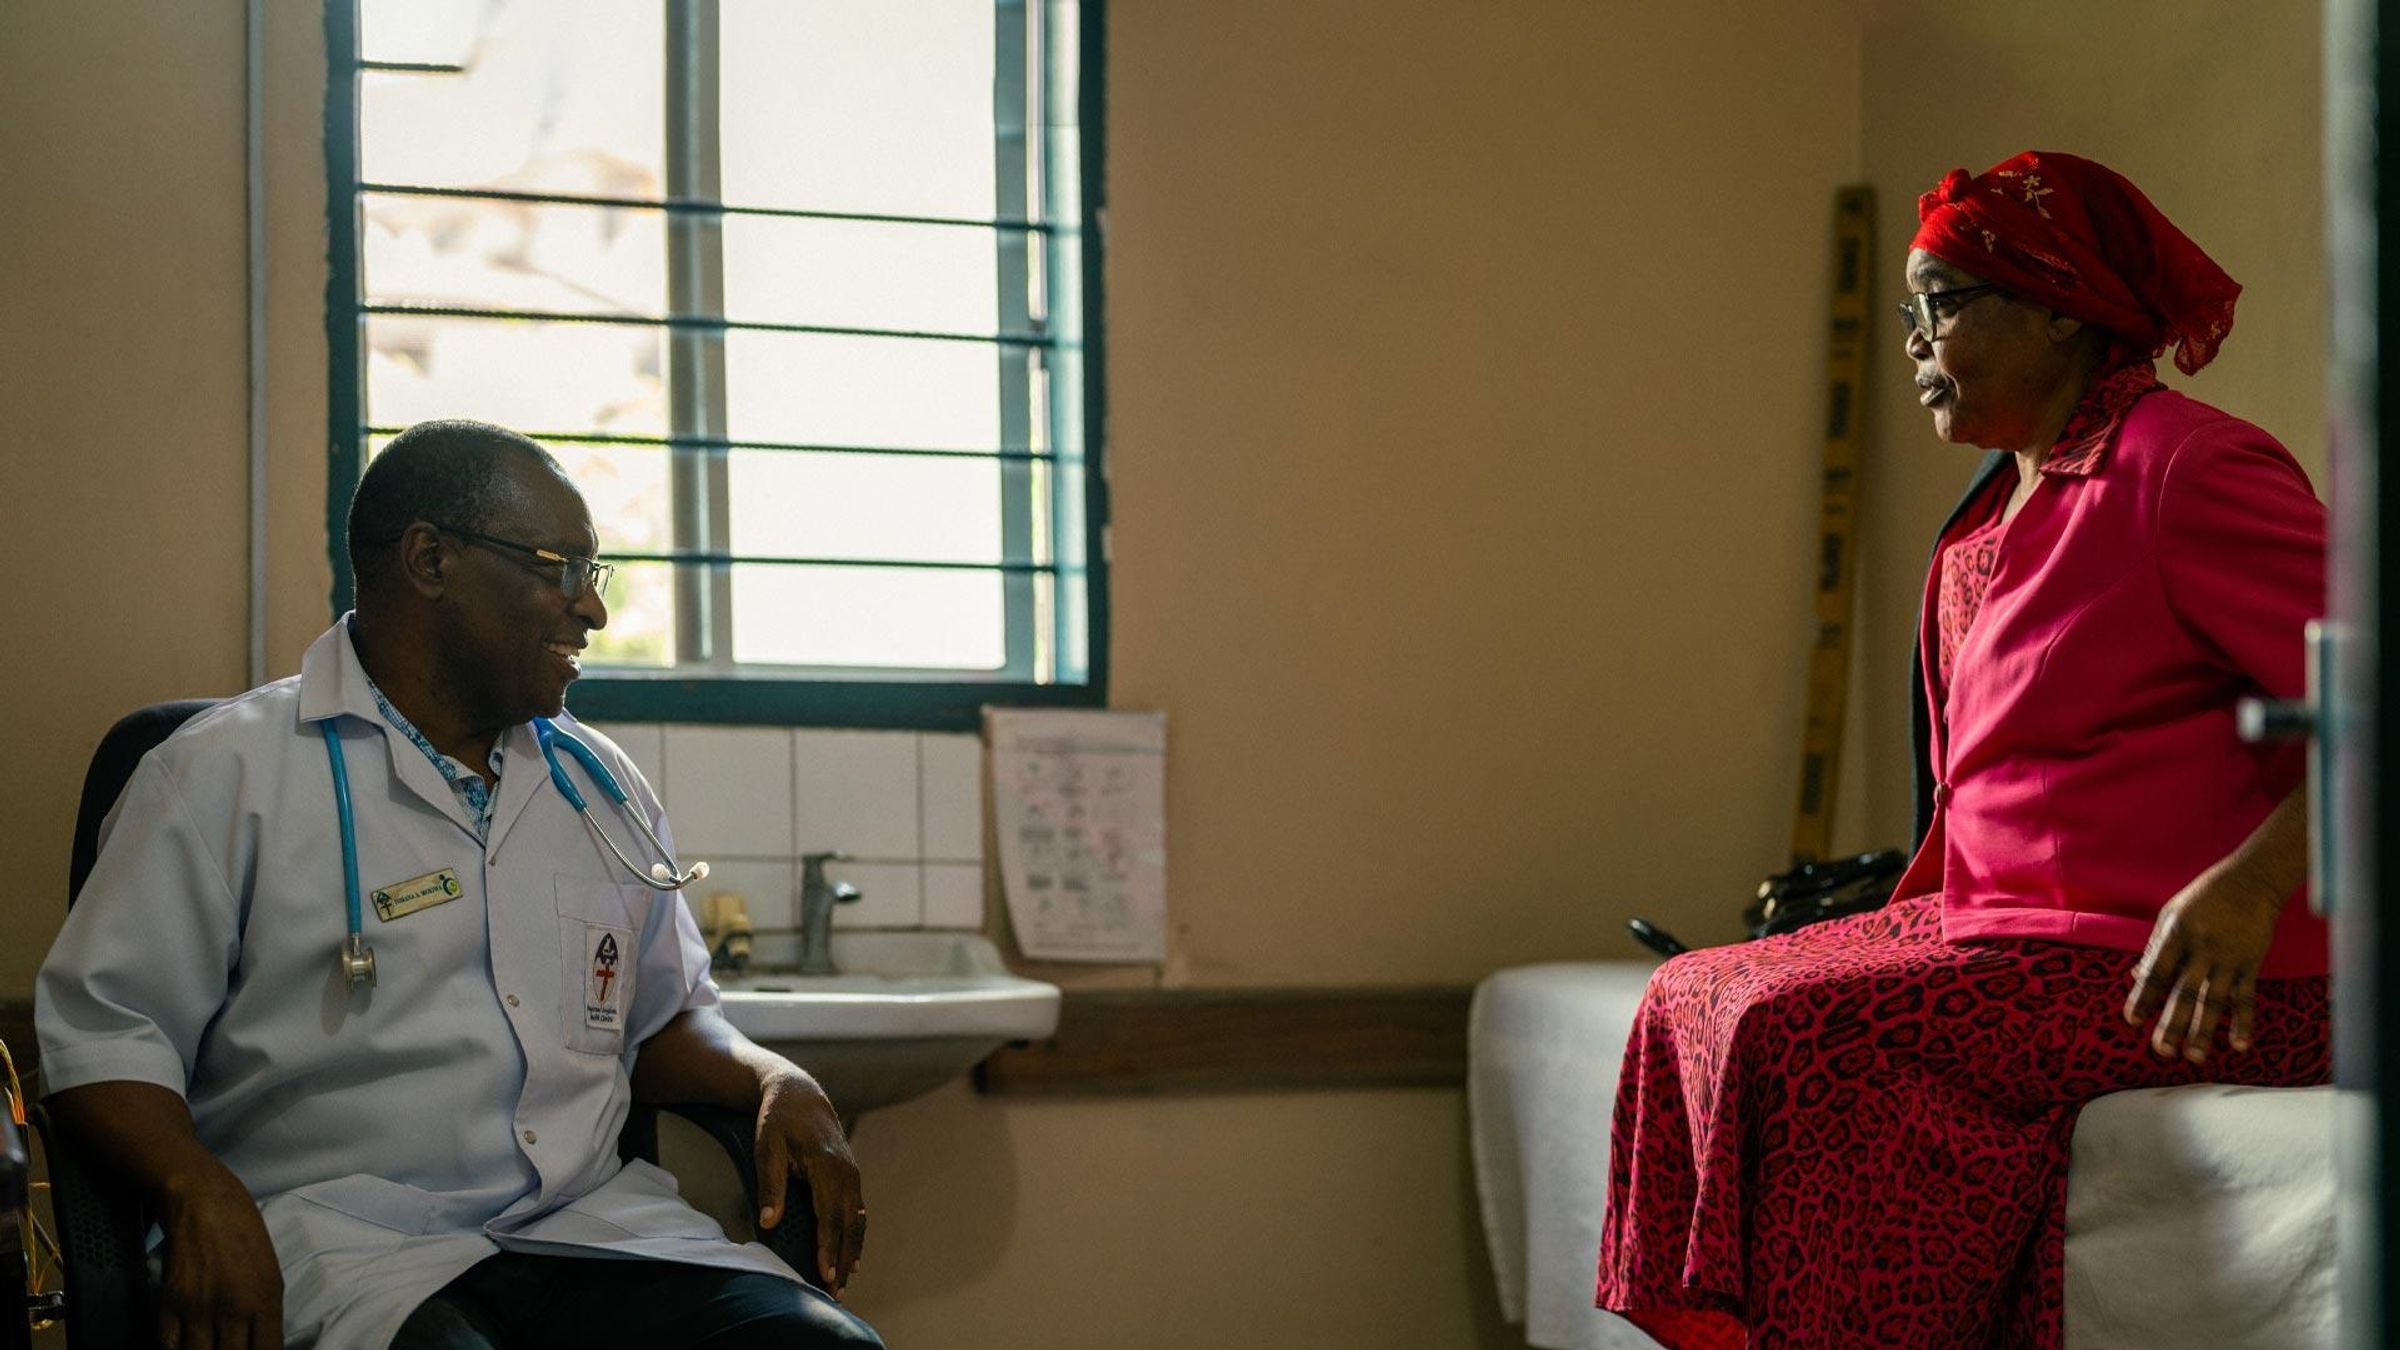 Dr. Yohana Mokiwa and Mary Mwingira during a hospital visit, Dar es Salaam, Tanzania